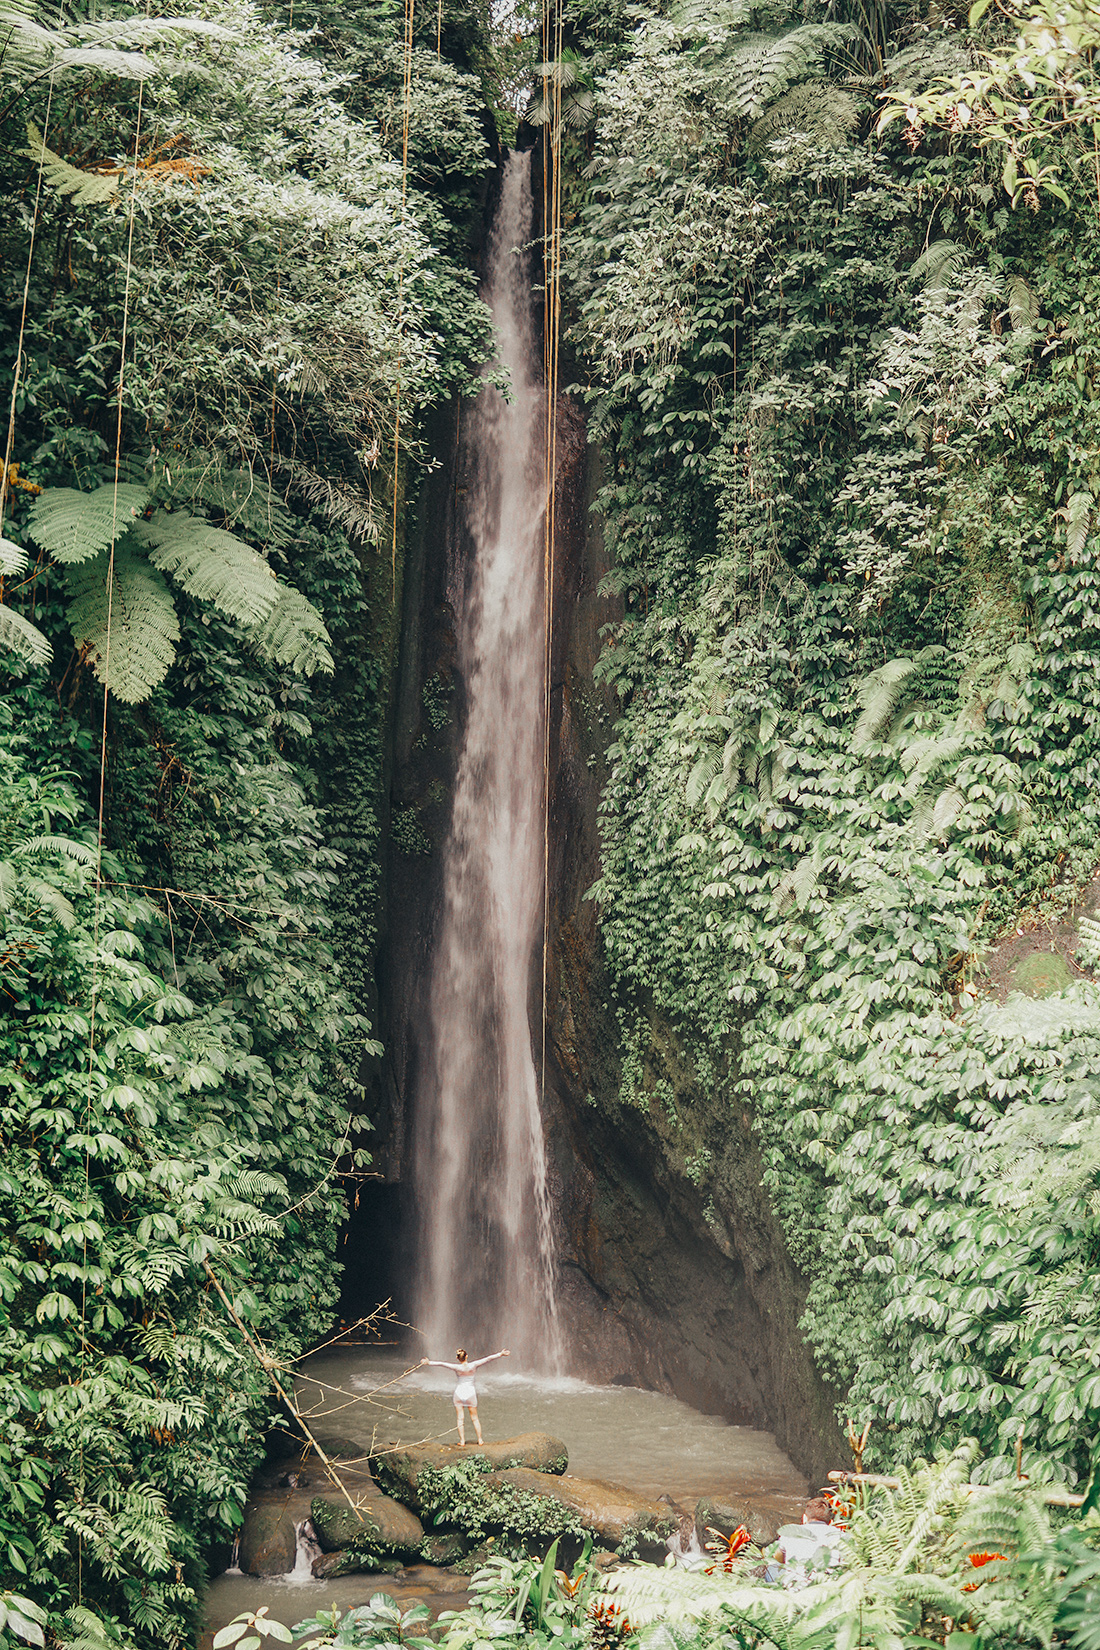 Leke Leke waterfall in Bali